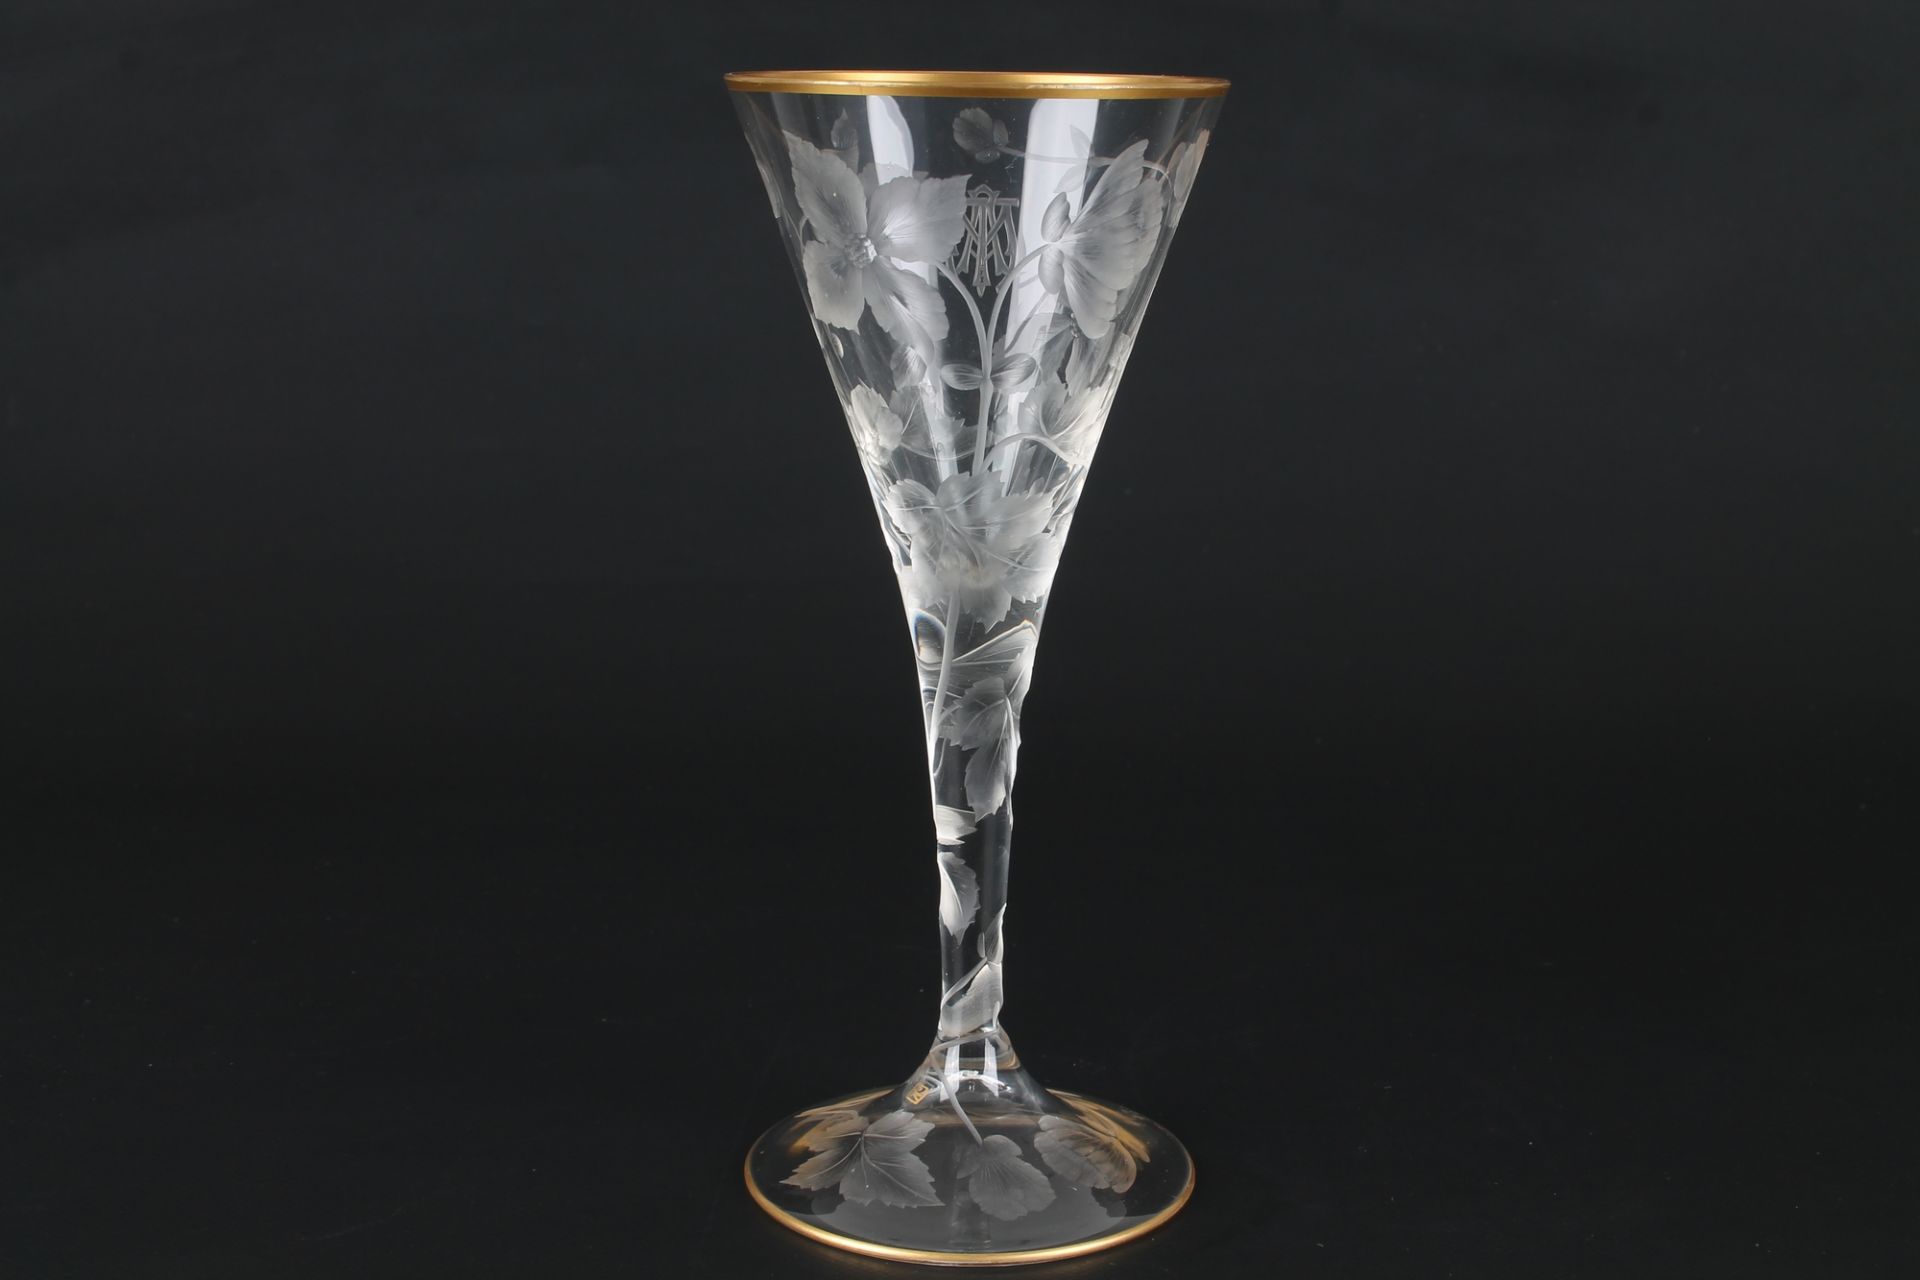 Ludwig Moser Karlsbad Kelchglas, glass goblet, - Image 2 of 5